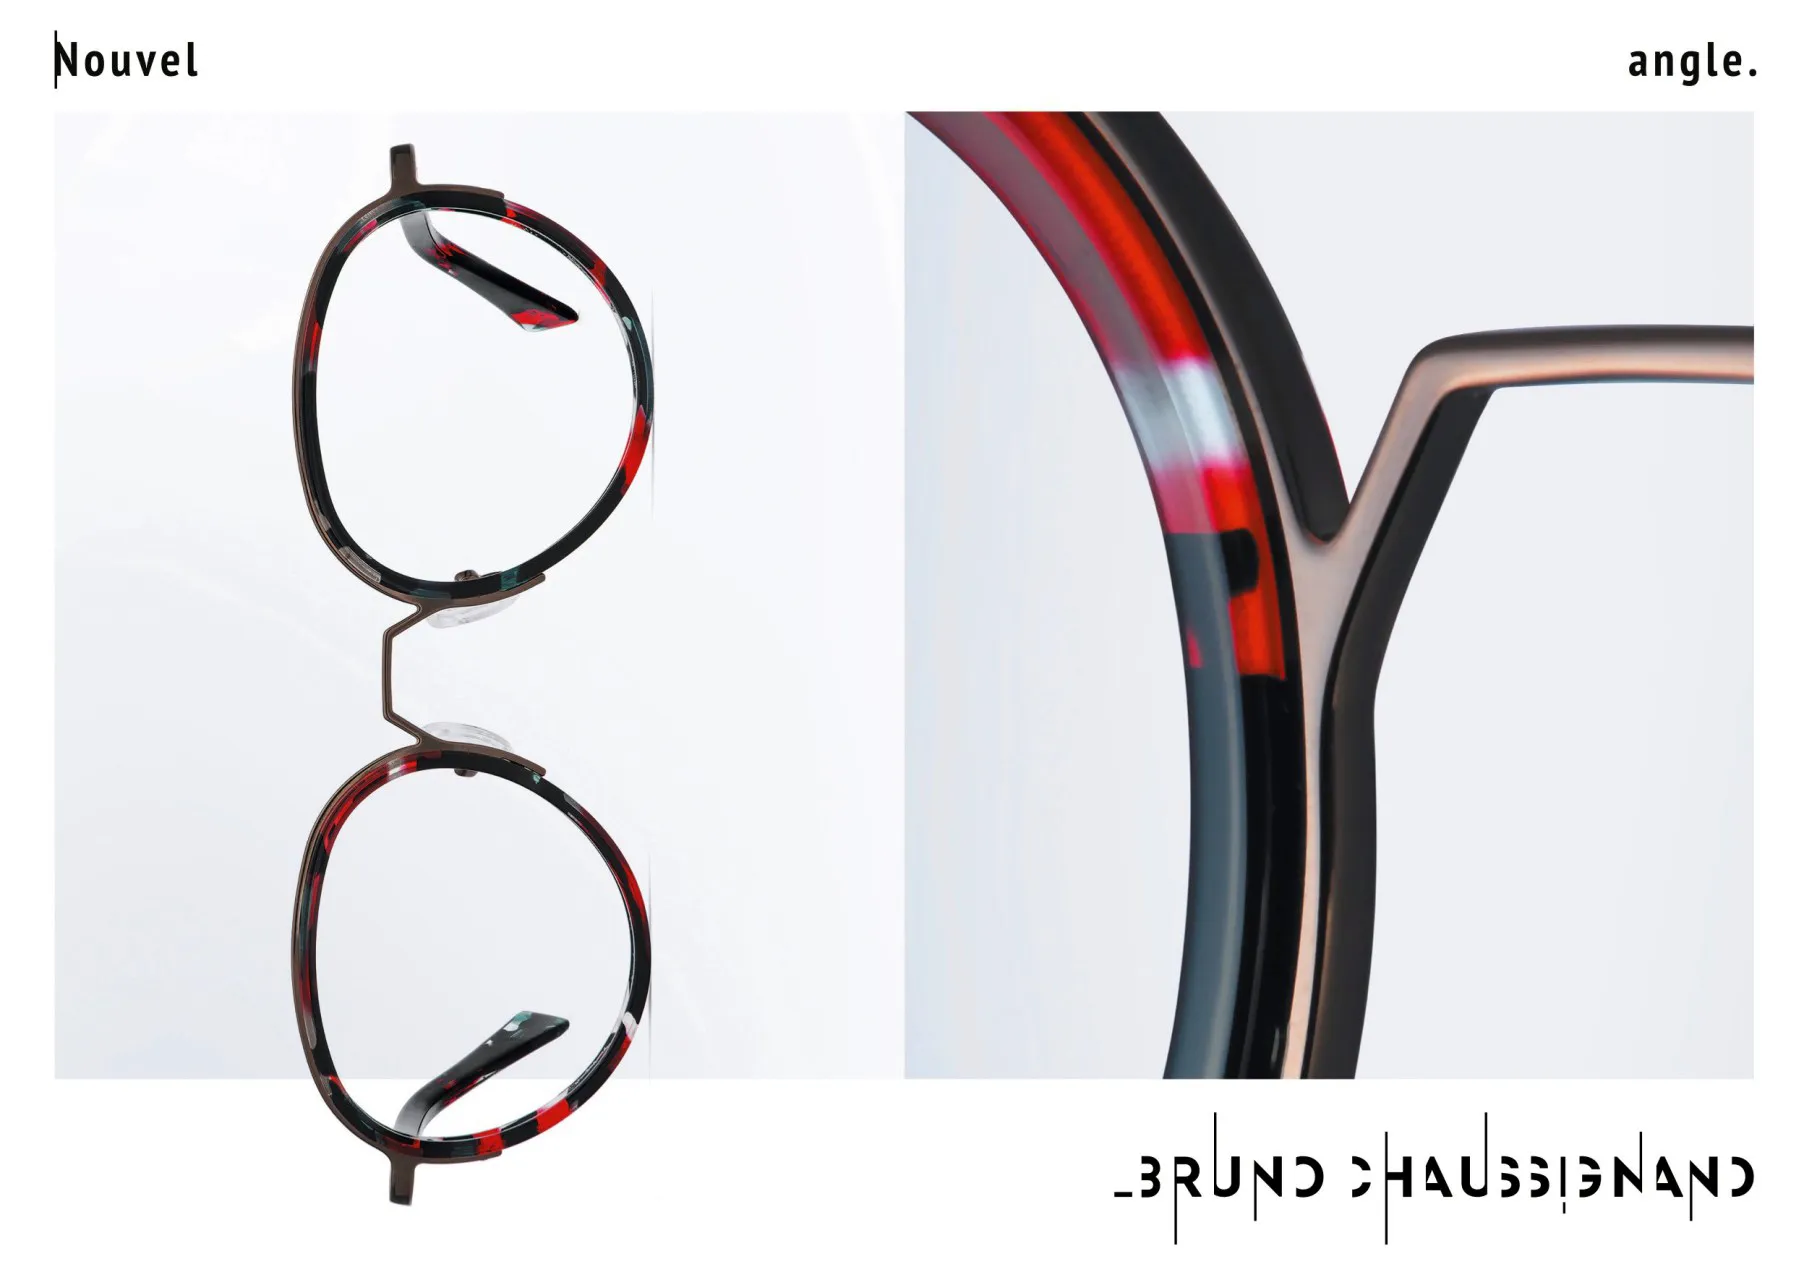 photo studio d'une paire de lunettes mises en page sur une affiche publicitaire